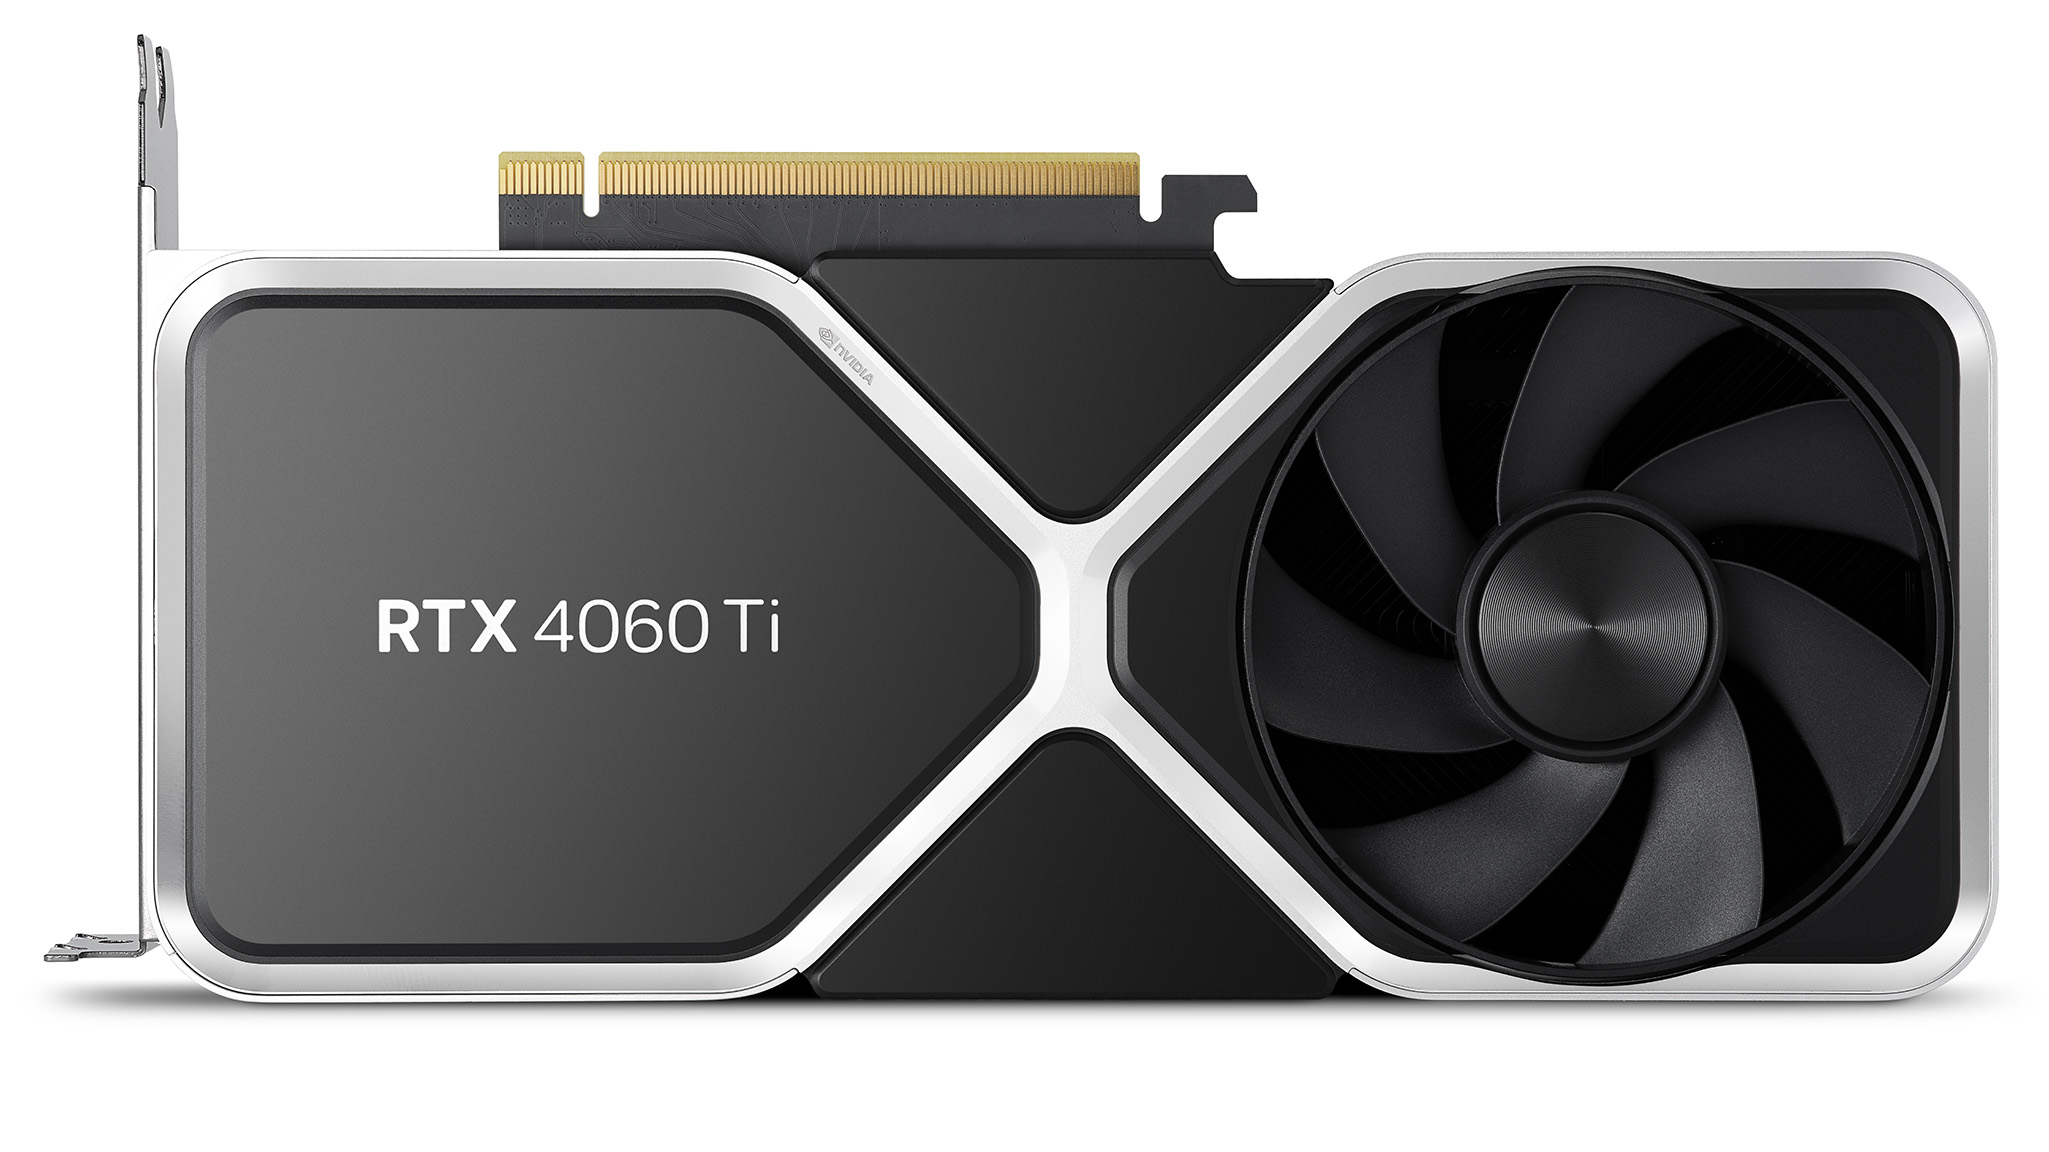 Offizielle Auflistungsbilder der NVIDIA GeForce RTX 4060 Ti